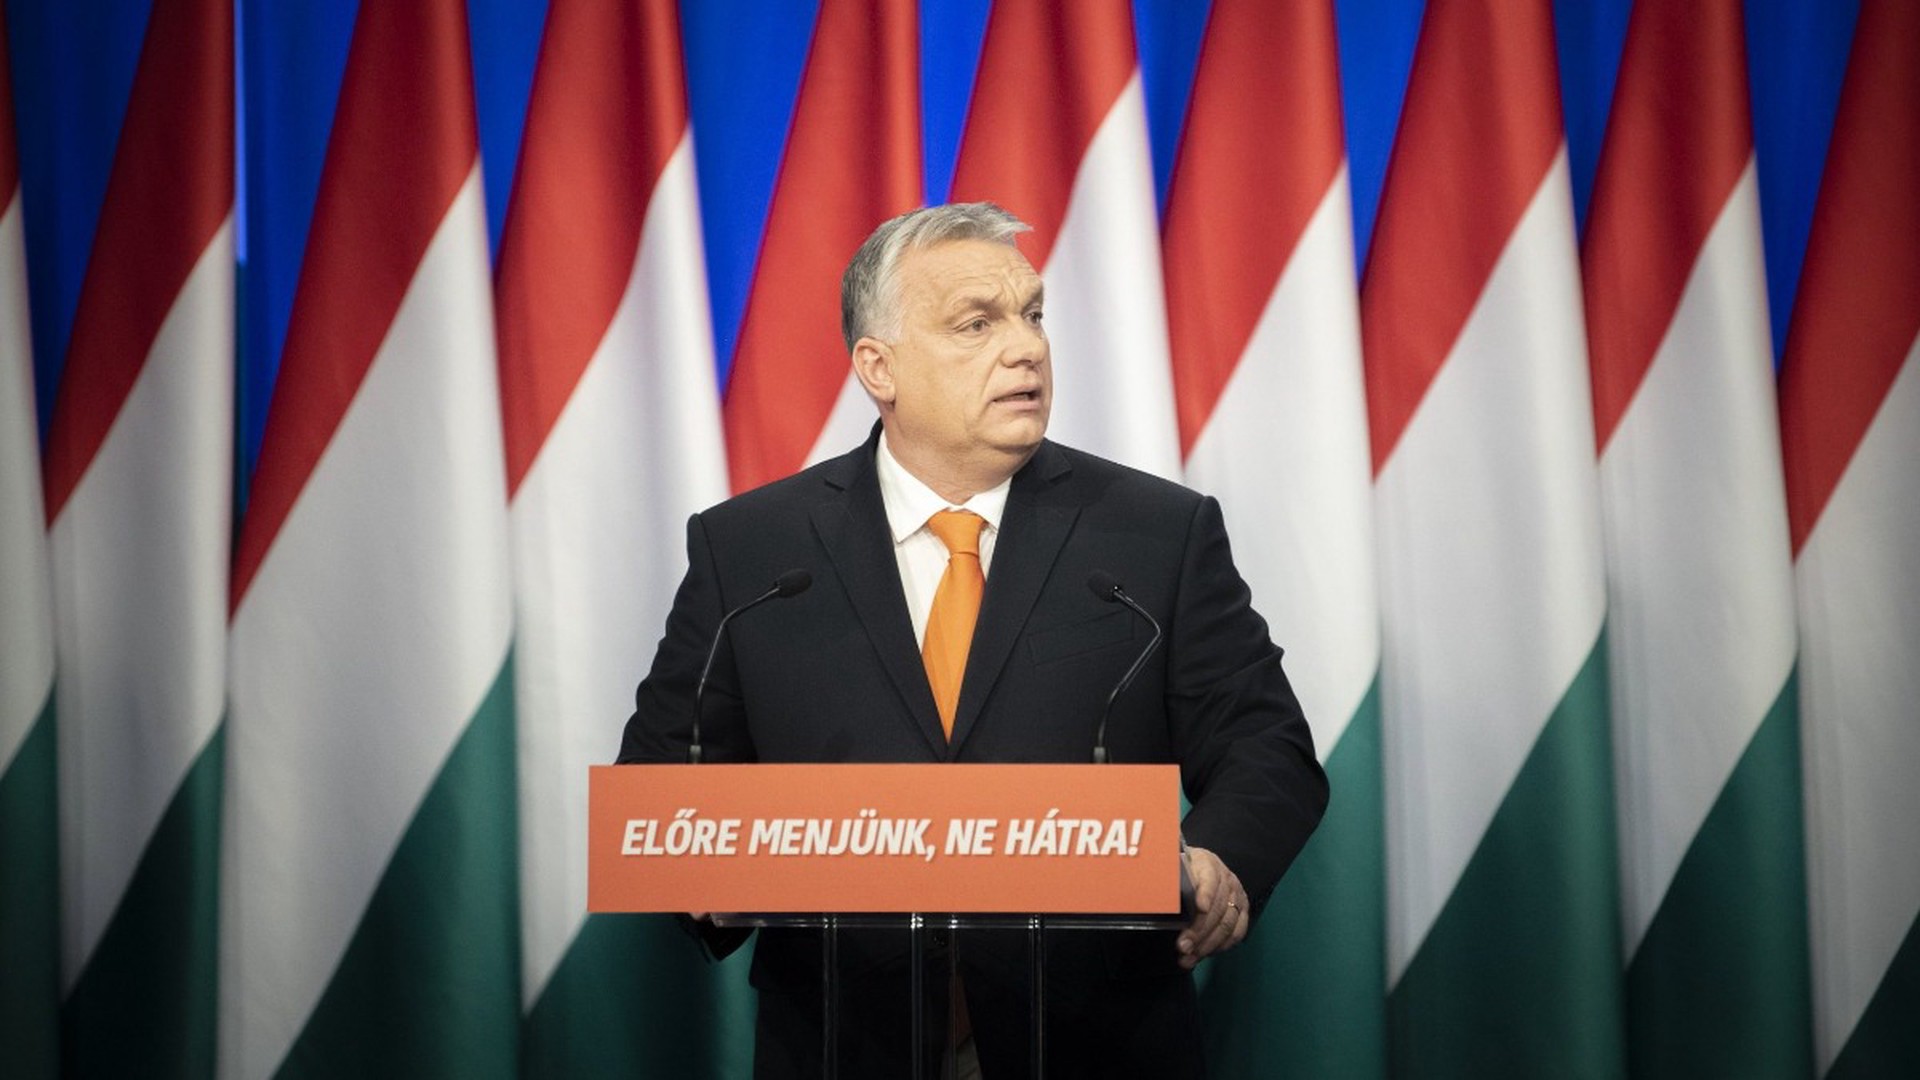 Политолог: Орбан предвидит «смерть» Европы и противопоставляет себя властям ЕС для сохранения Венгрии